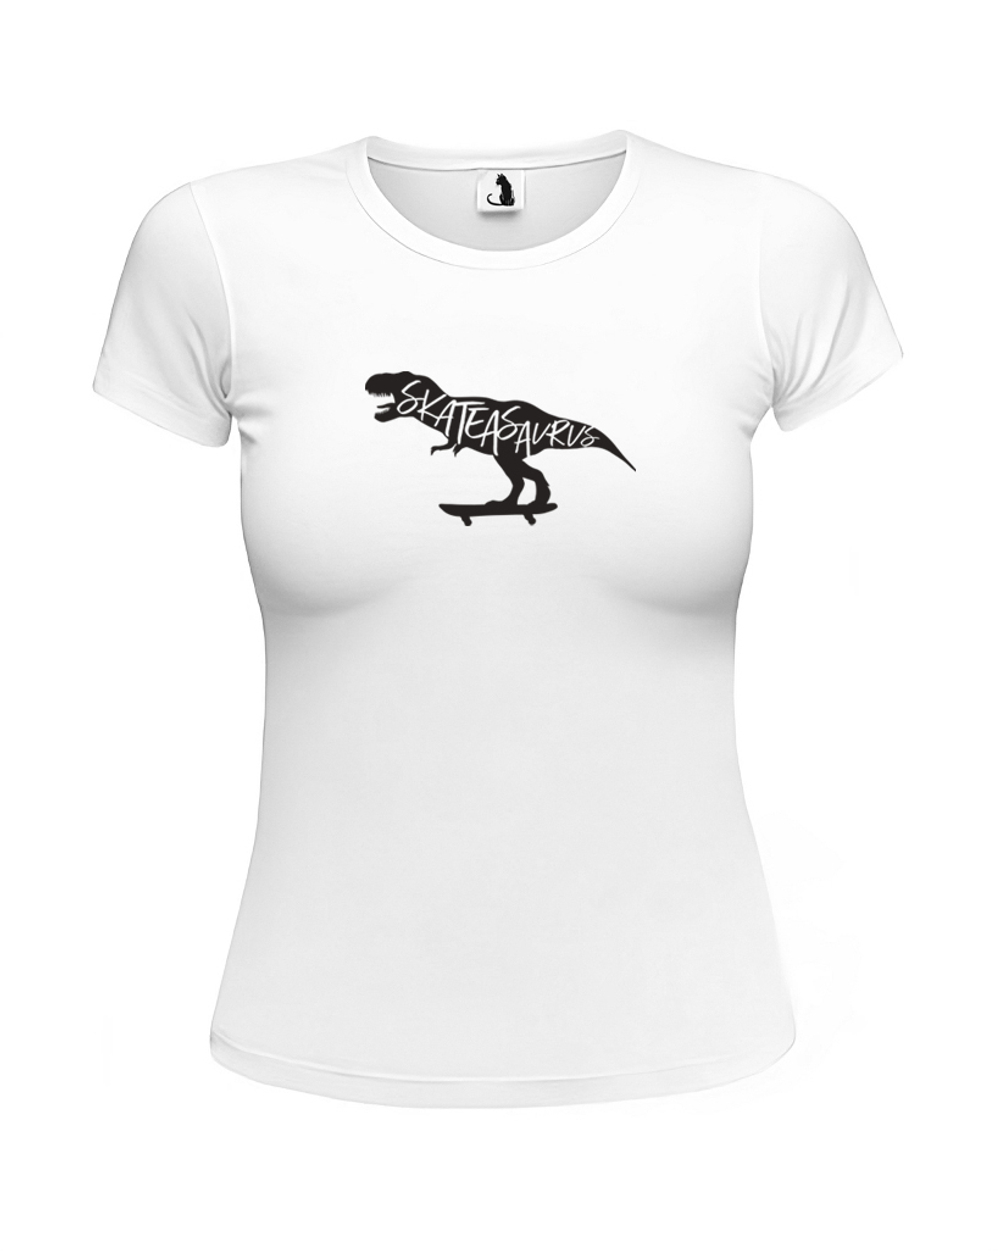 Футболка Skateasaurus женская приталенная белая с черным рисунком